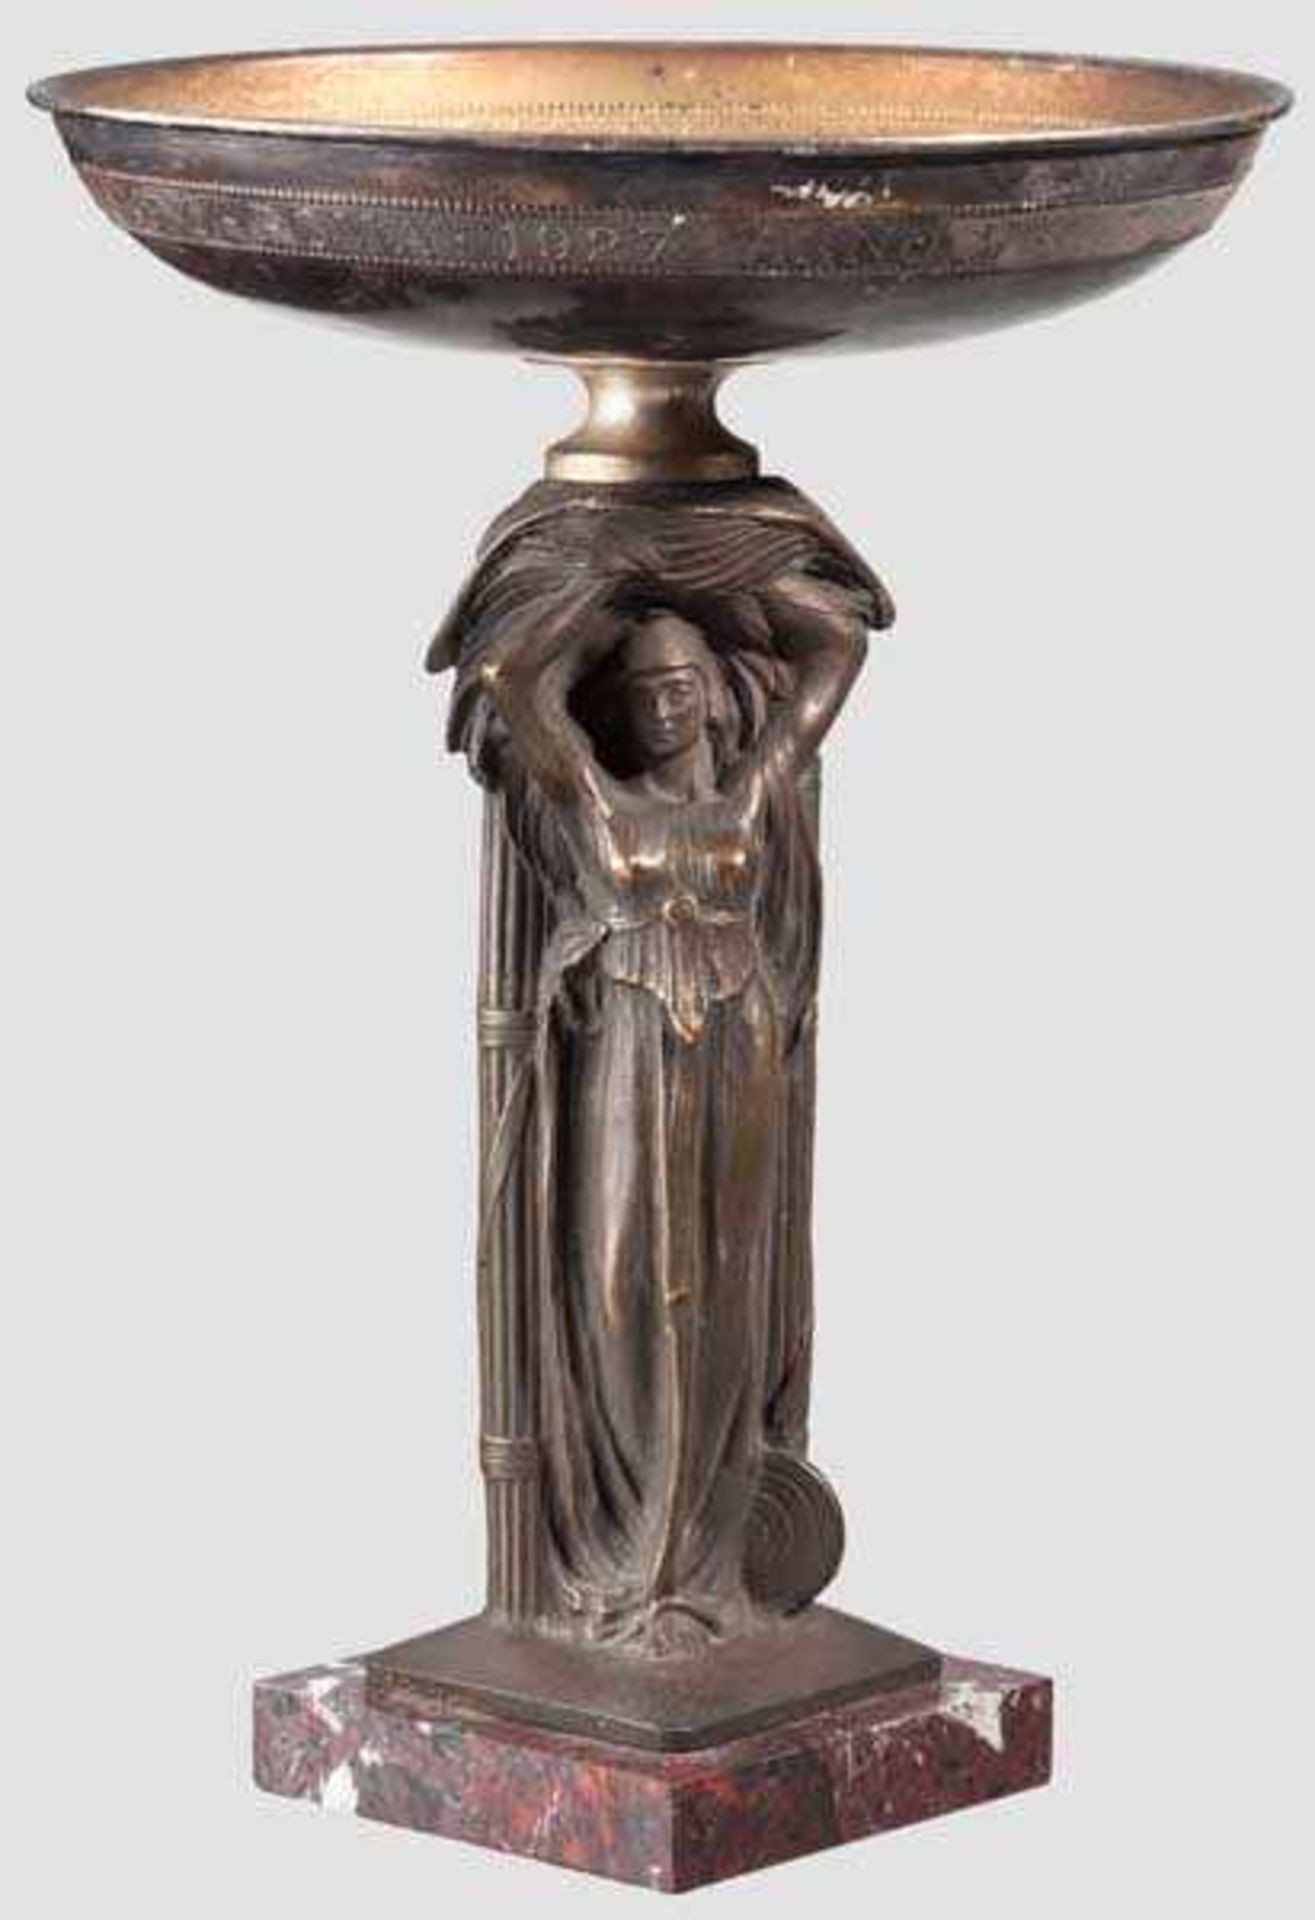 Pokal mit Liktorenbündel, Schießpreis von 1927 Schale aus versilbertem Buntmetall, umlaufend {VII